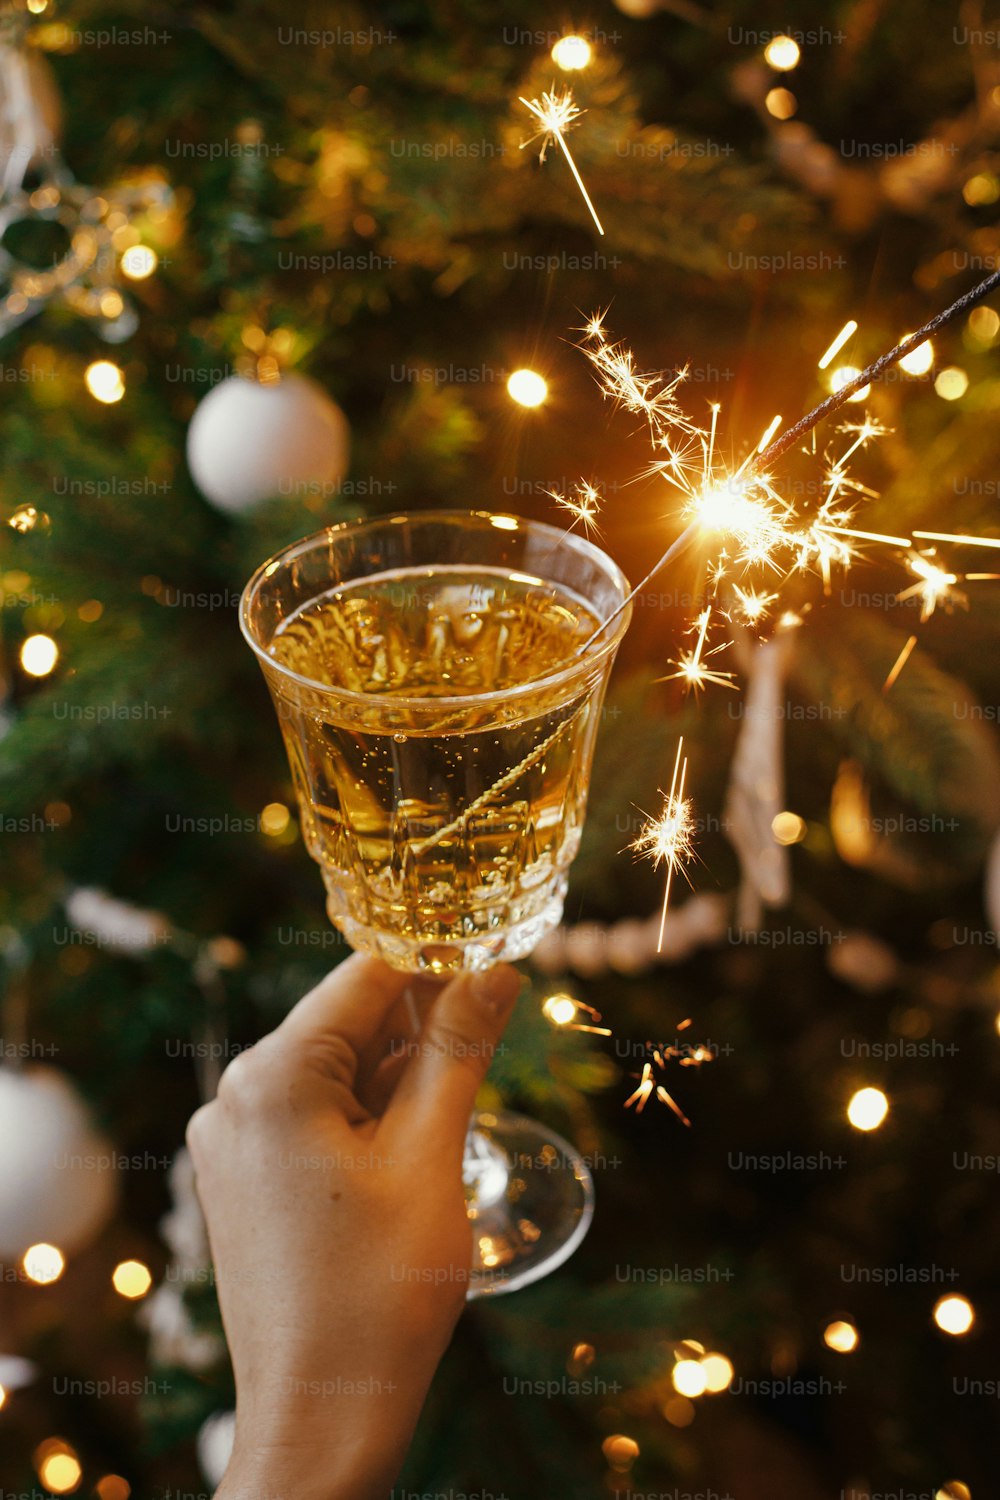 Frau feiert mit Feuerwerk im Champagnerglas vor dem Hintergrund der Weihnachtsbaumbeleuchtung. Frohes neues Jahr!! Hände halten brennende Wunderkerze und trinken im skandinavischen Raum. Atmosphärischer Moment